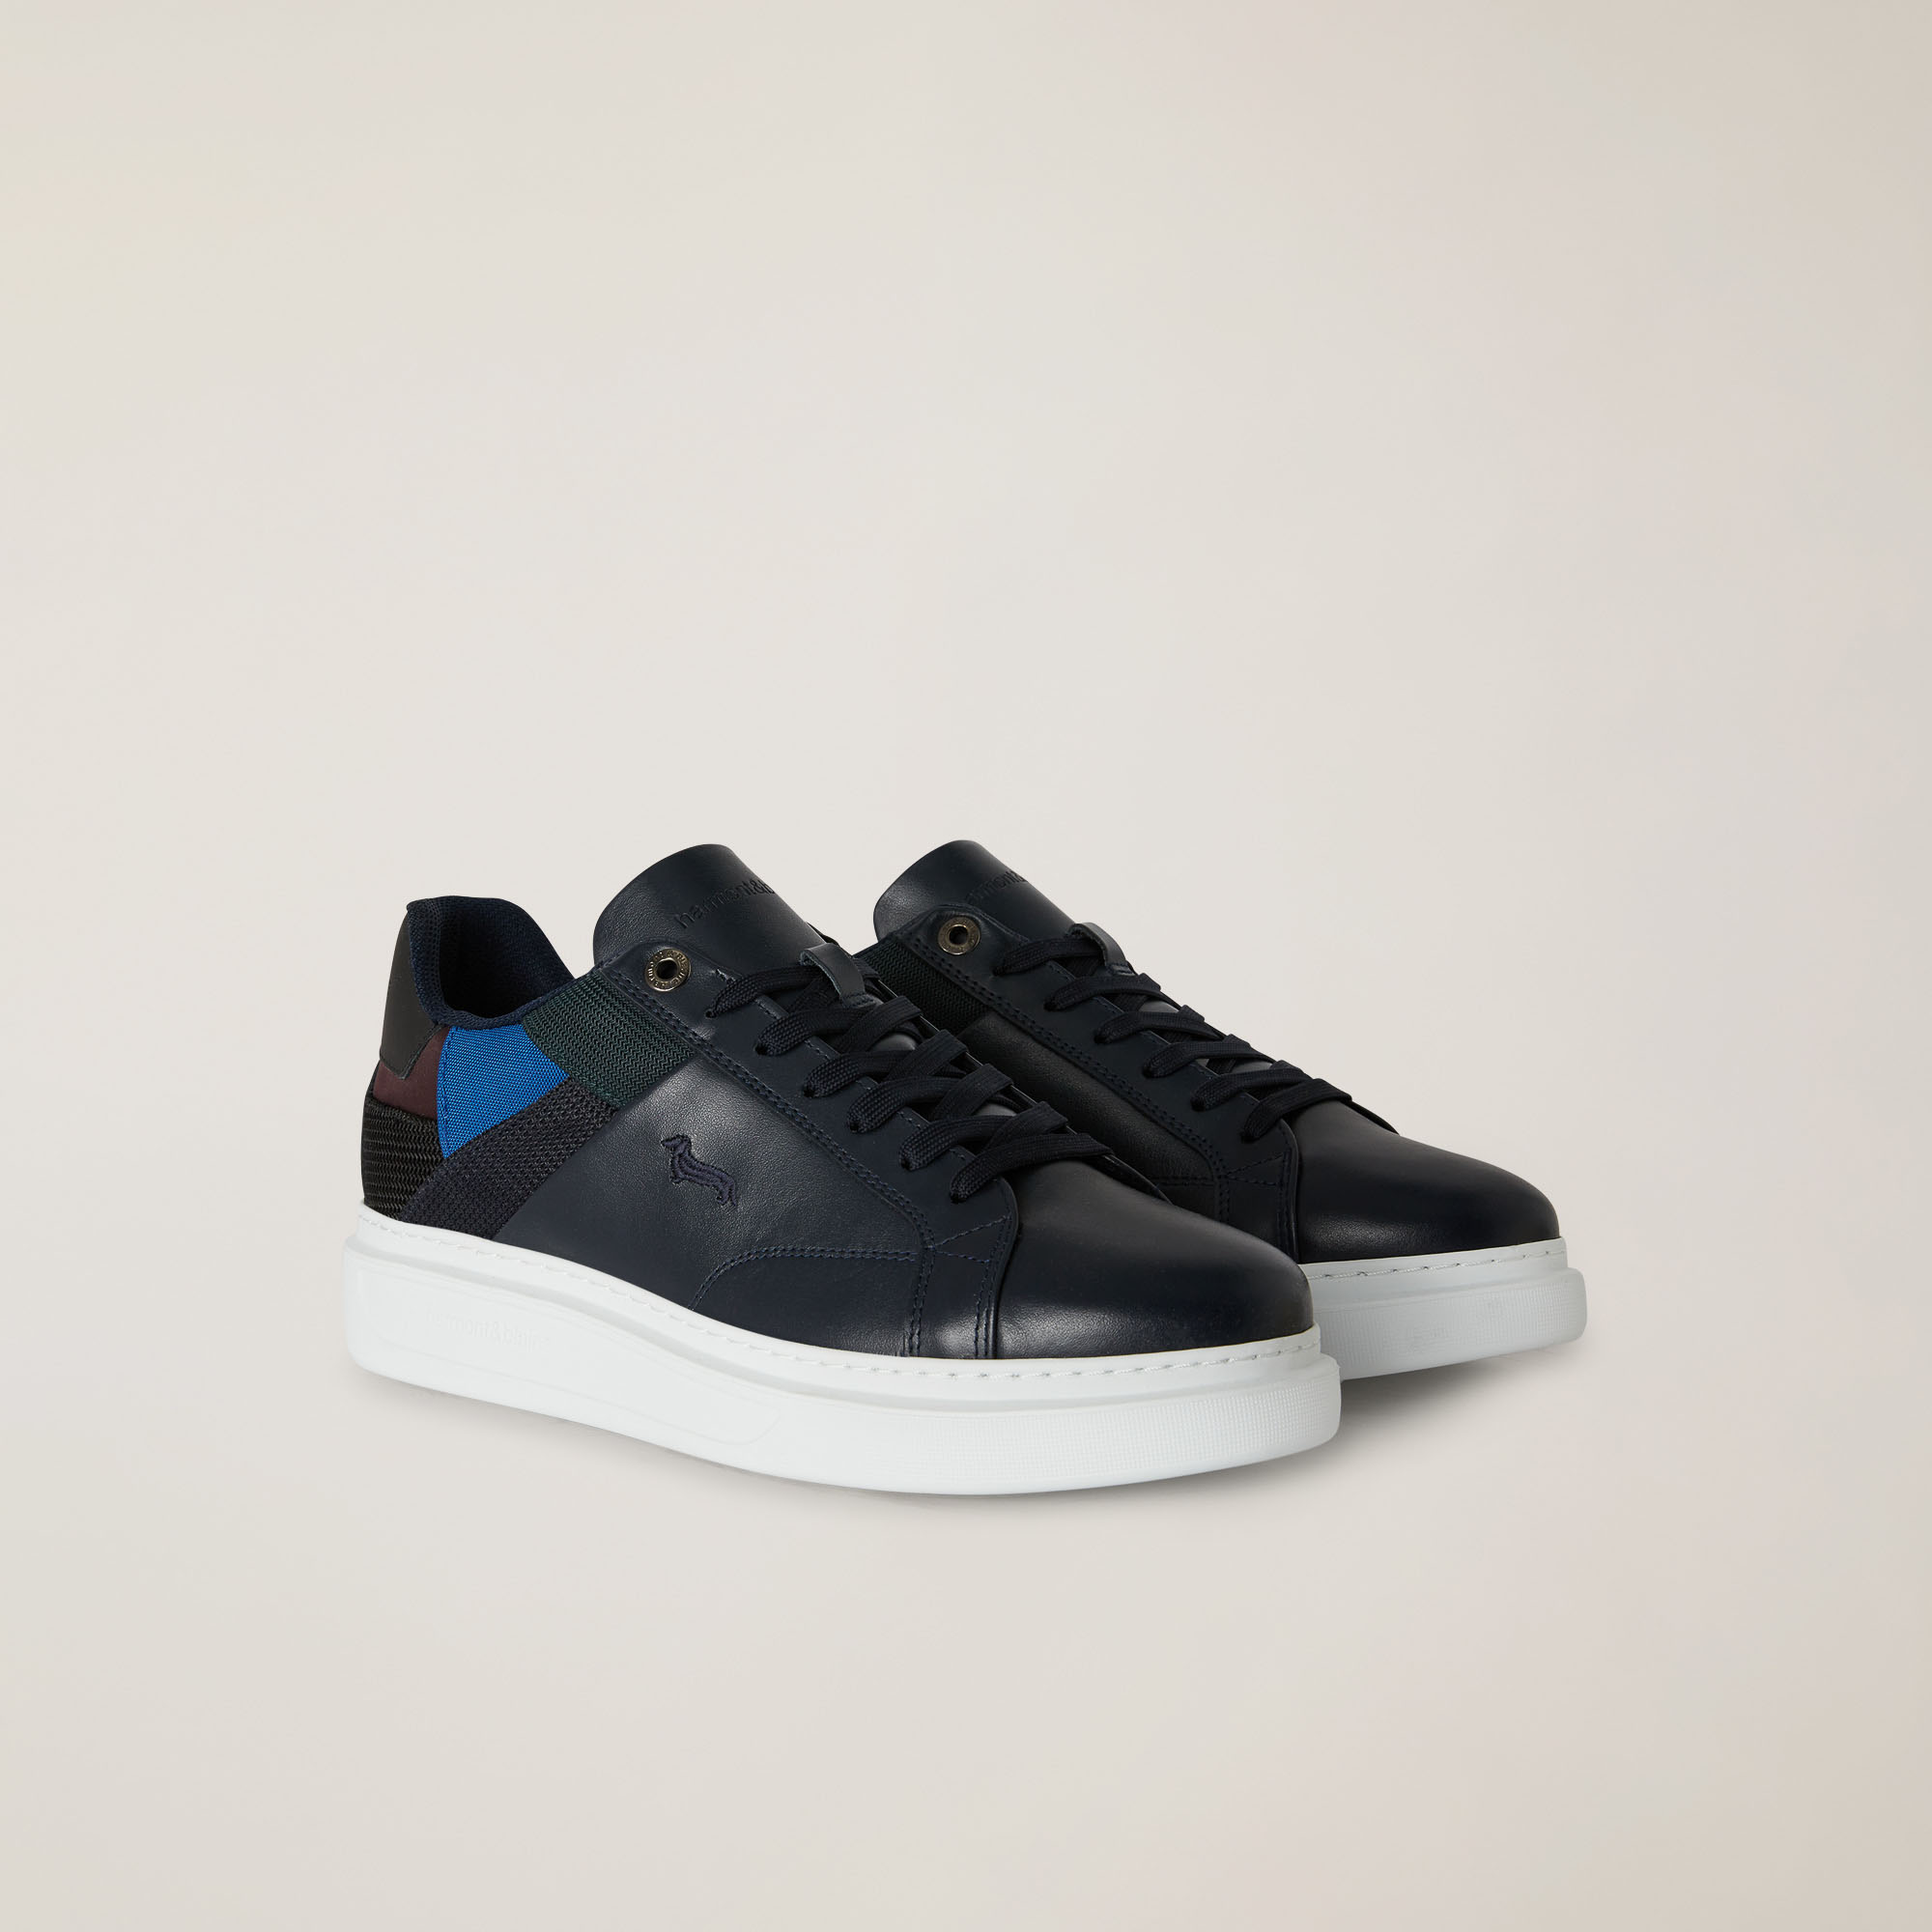 Sneaker In Pelle E Tessuto Con Dettagli A Contrasto, Blu Scuro, large image number 1